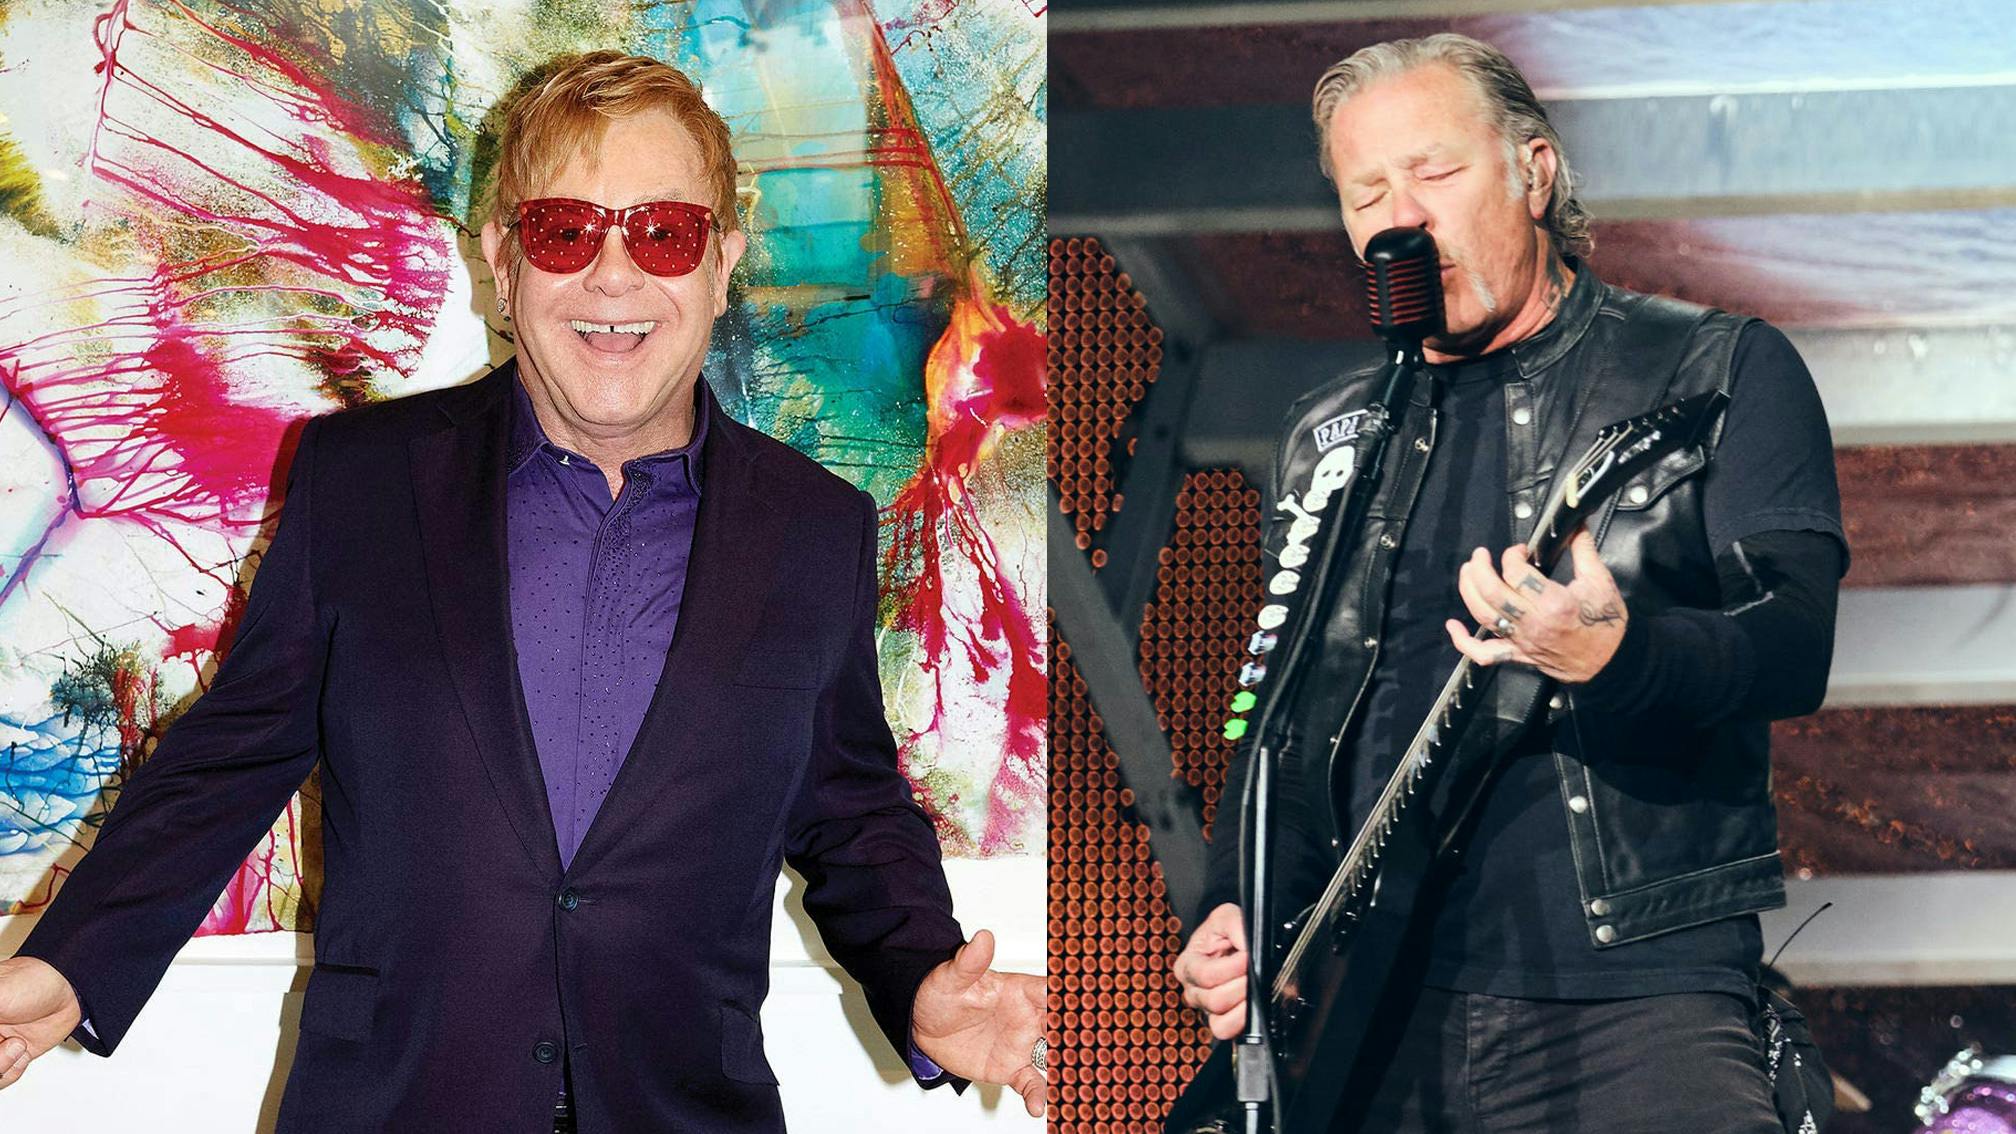 Elton John has been working on “something” with Metallica